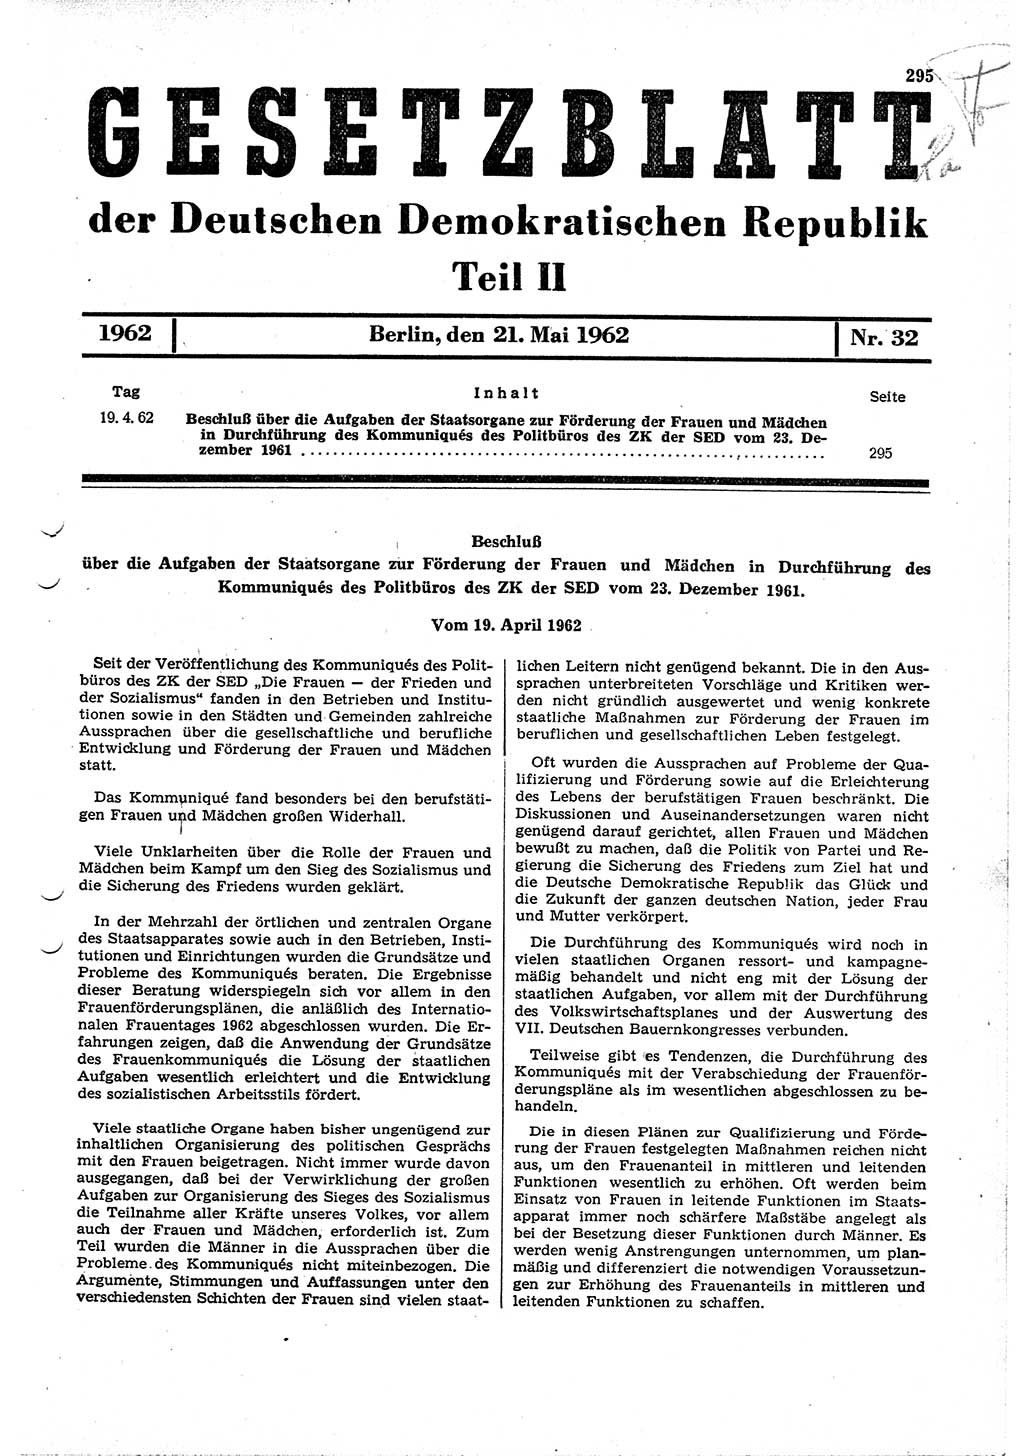 Gesetzblatt (GBl.) der Deutschen Demokratischen Republik (DDR) Teil ⅠⅠ 1962, Seite 295 (GBl. DDR ⅠⅠ 1962, S. 295)